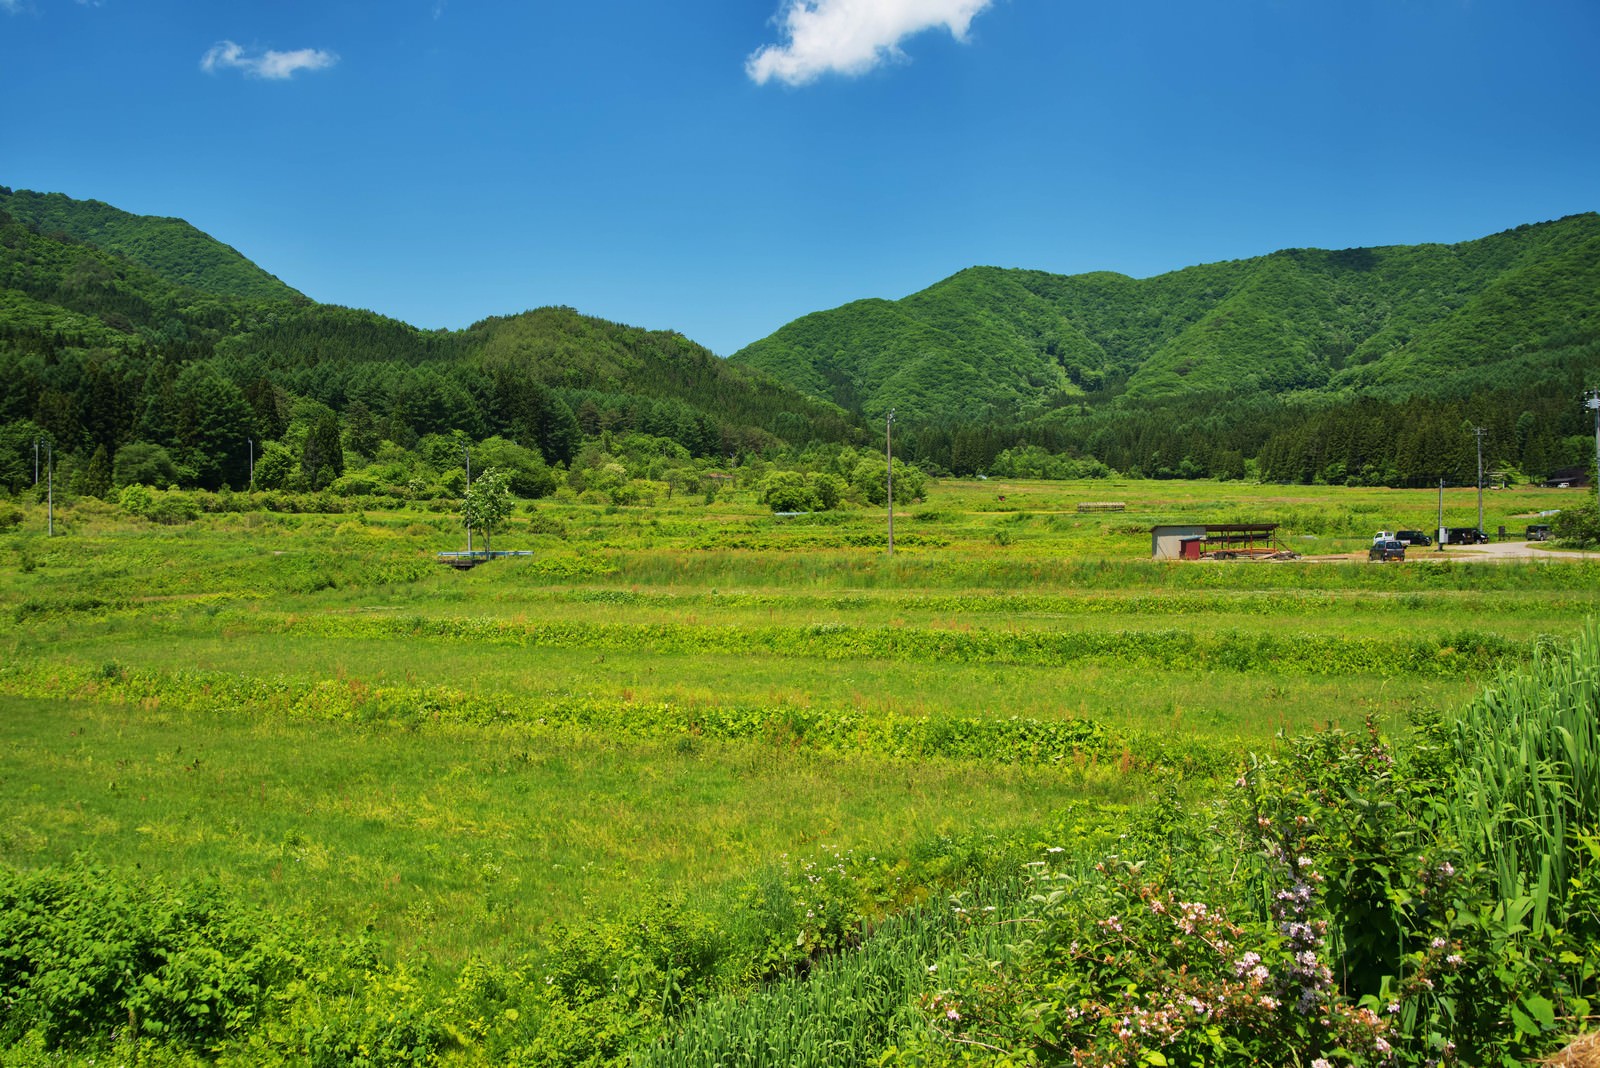 会津の里山風景の無料写真素材